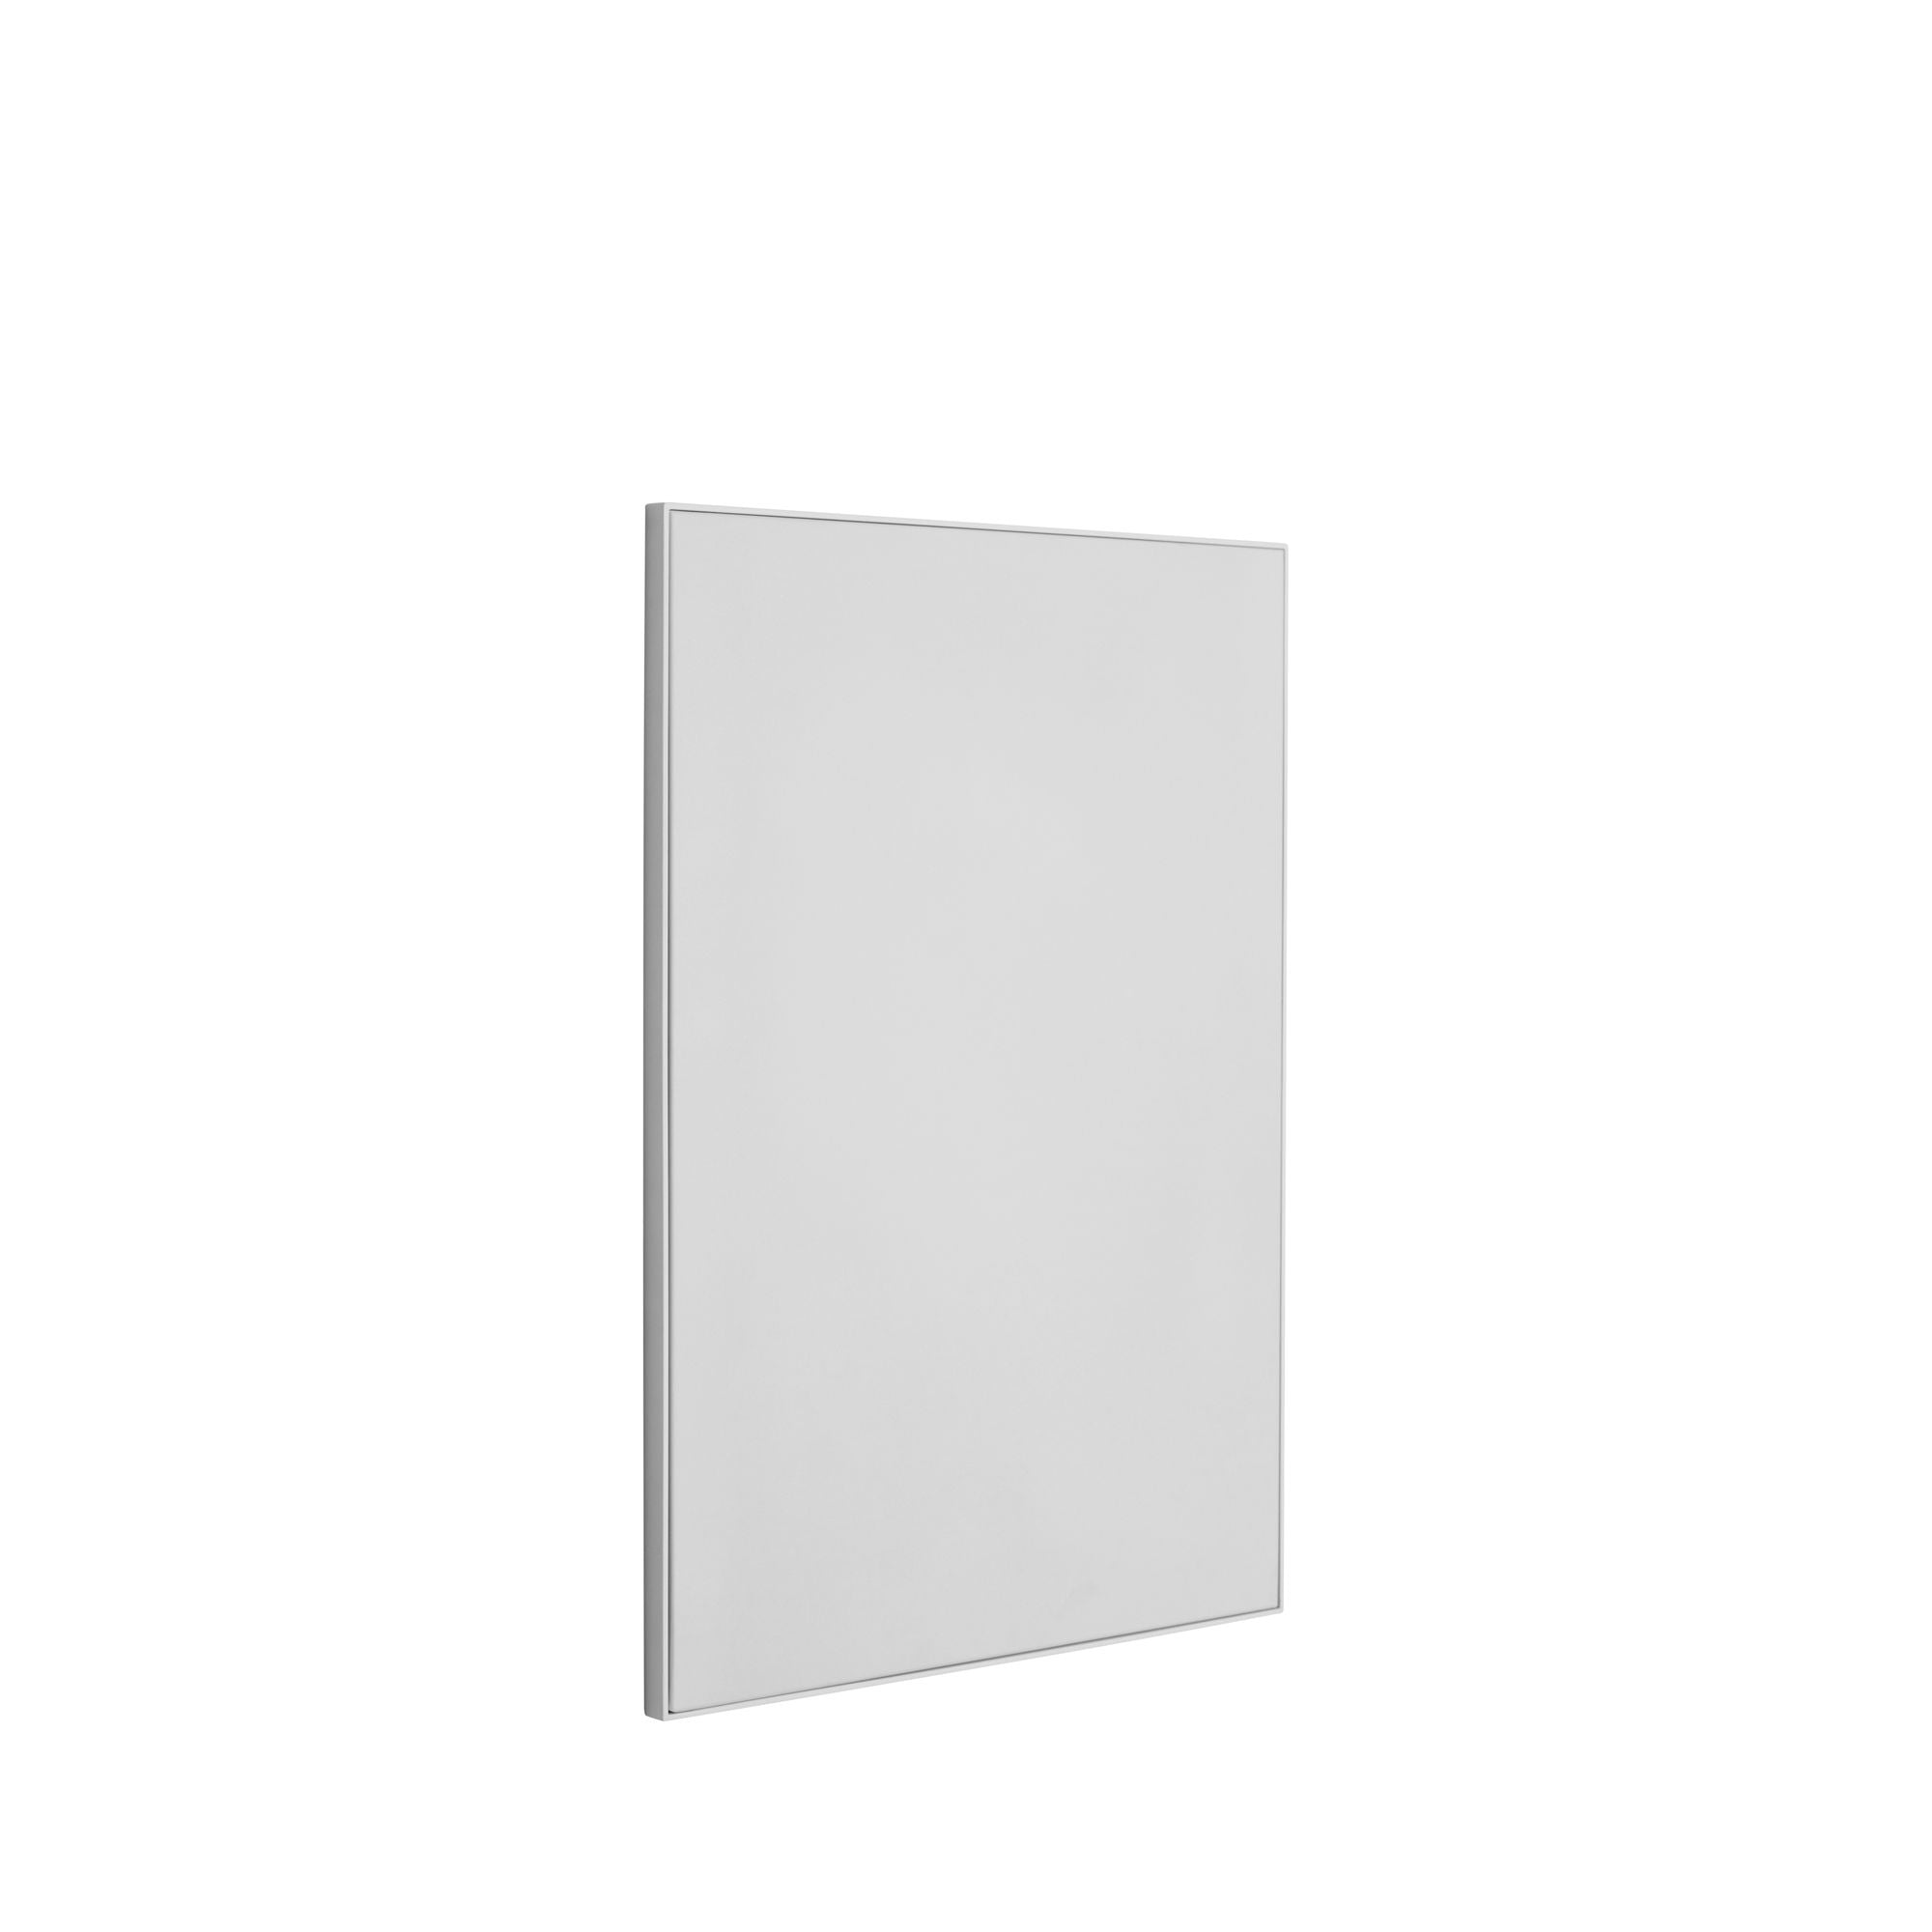 Hübsch Board Board Medium Light Grey